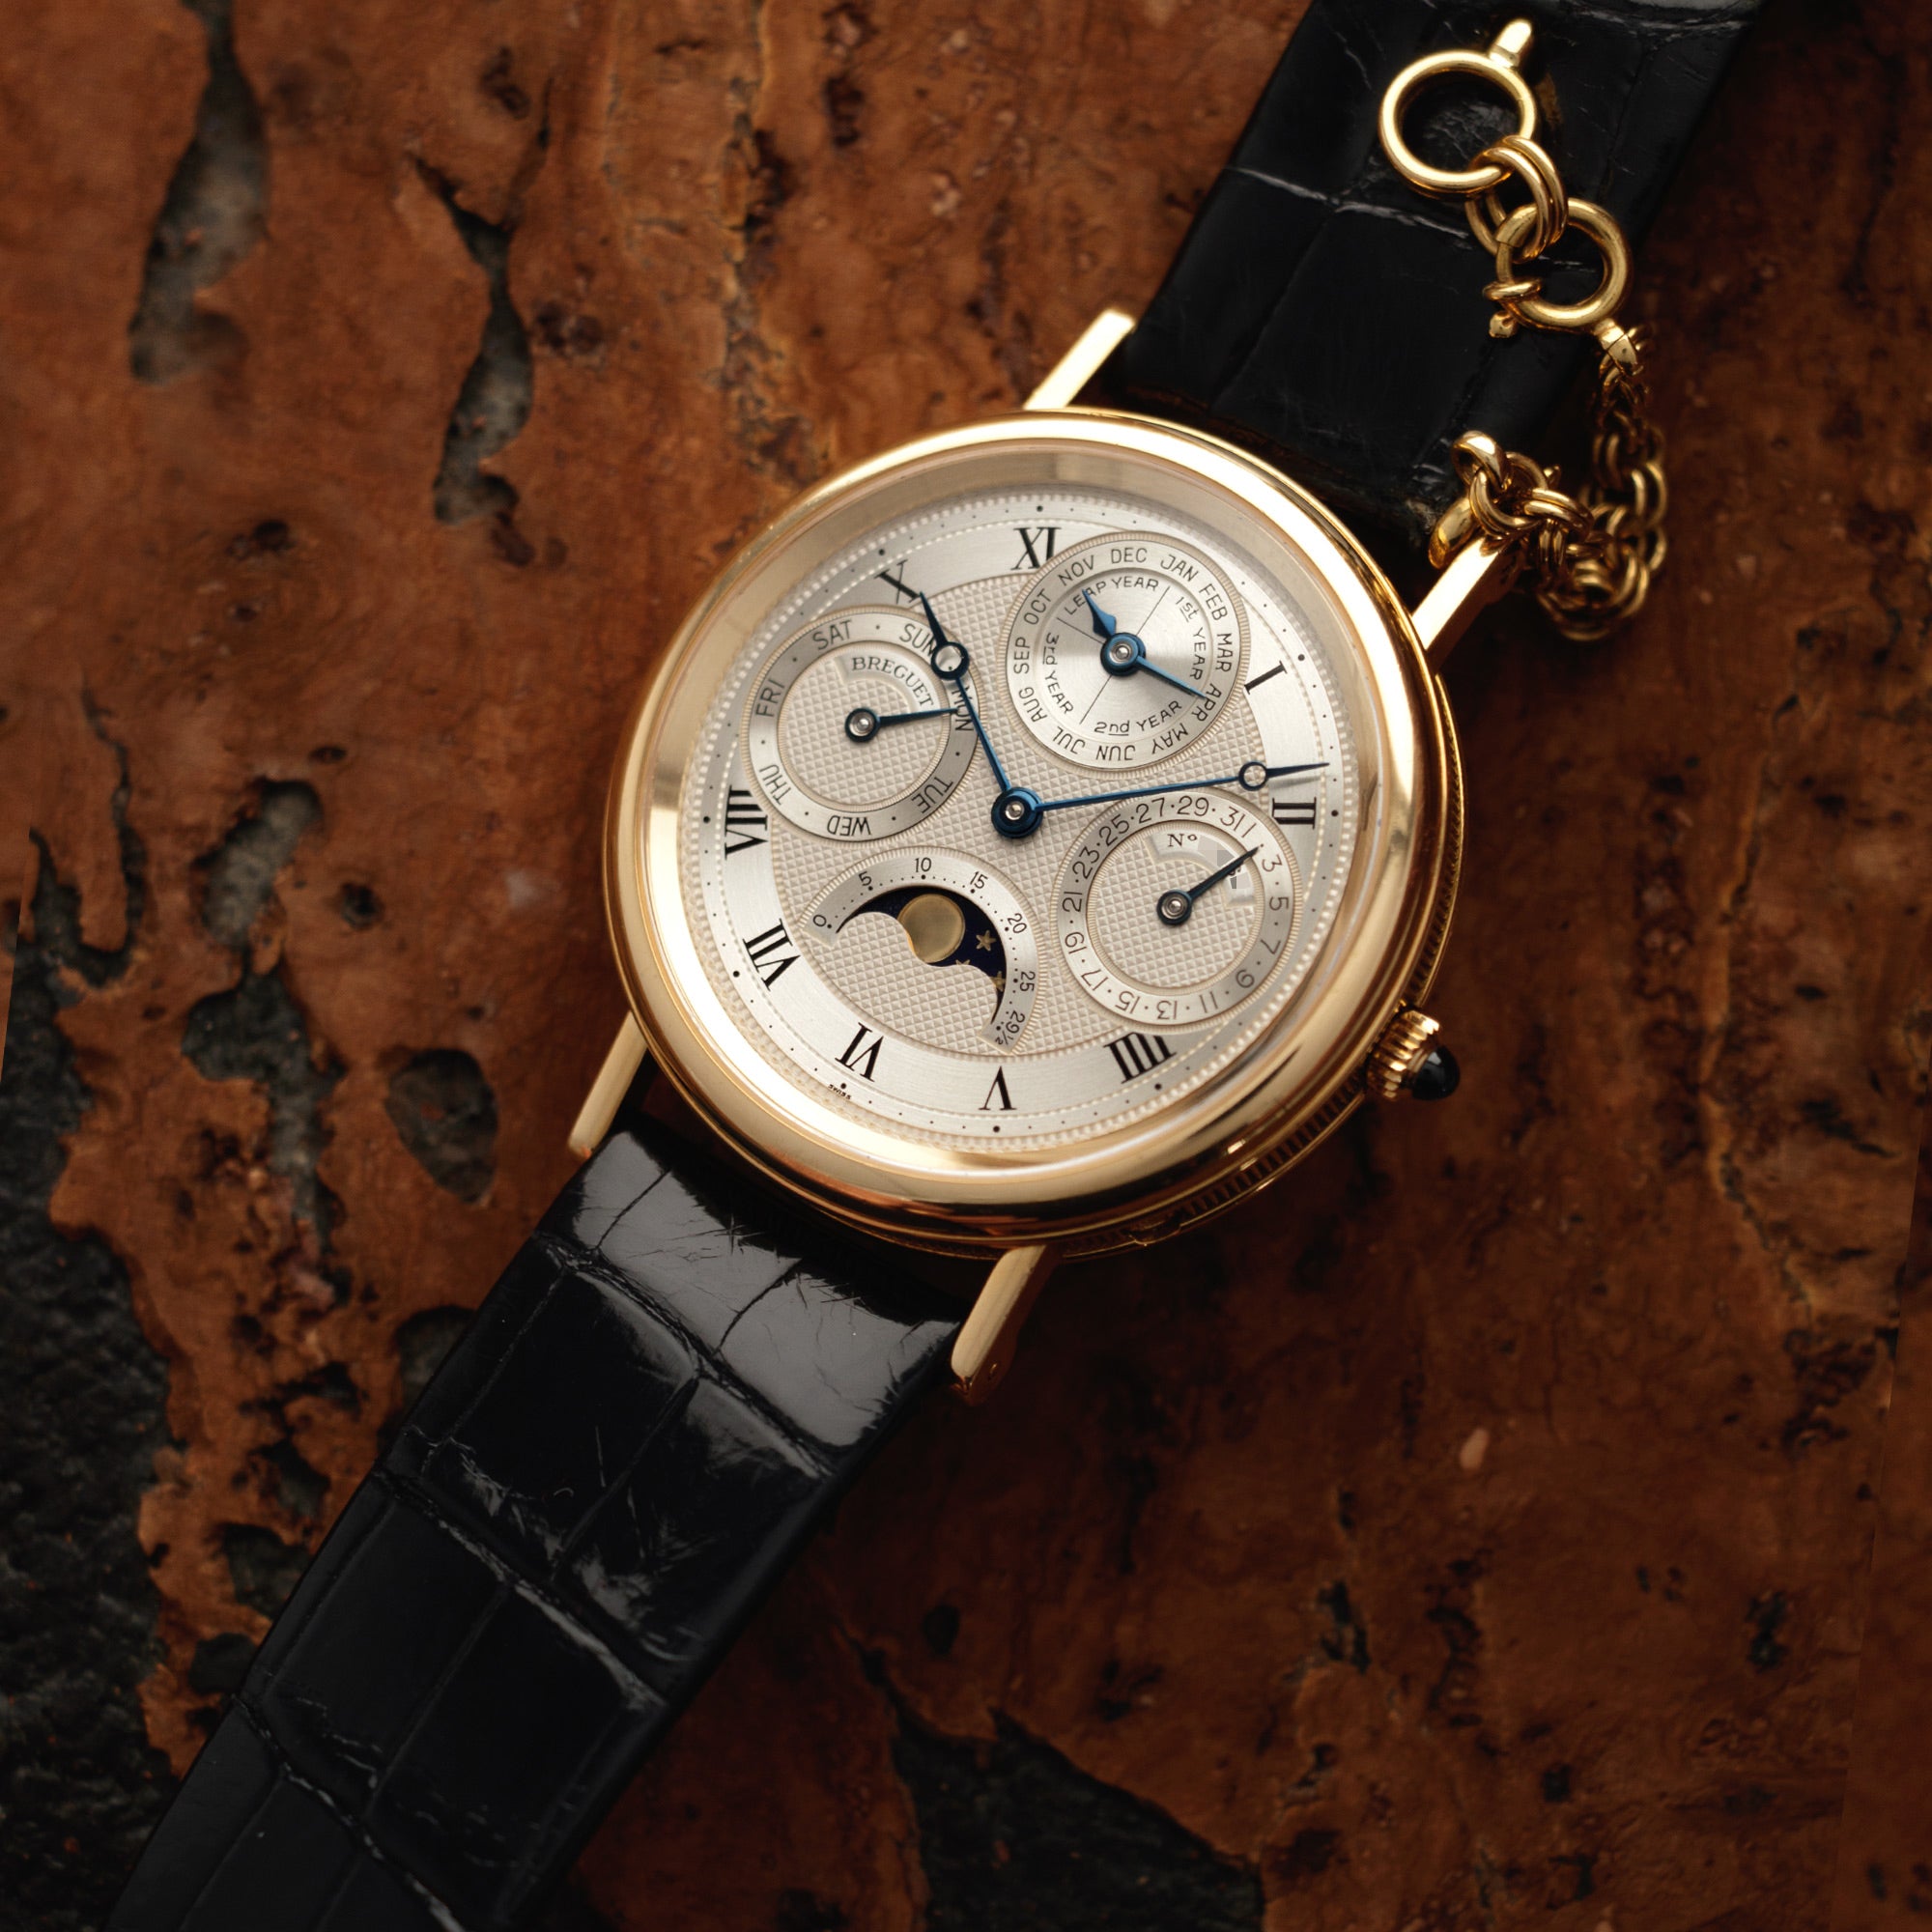 Breguet - Breguet Yellow Gold Classique Perpetual Calendar Watch Ref. 3050 - The Keystone Watches